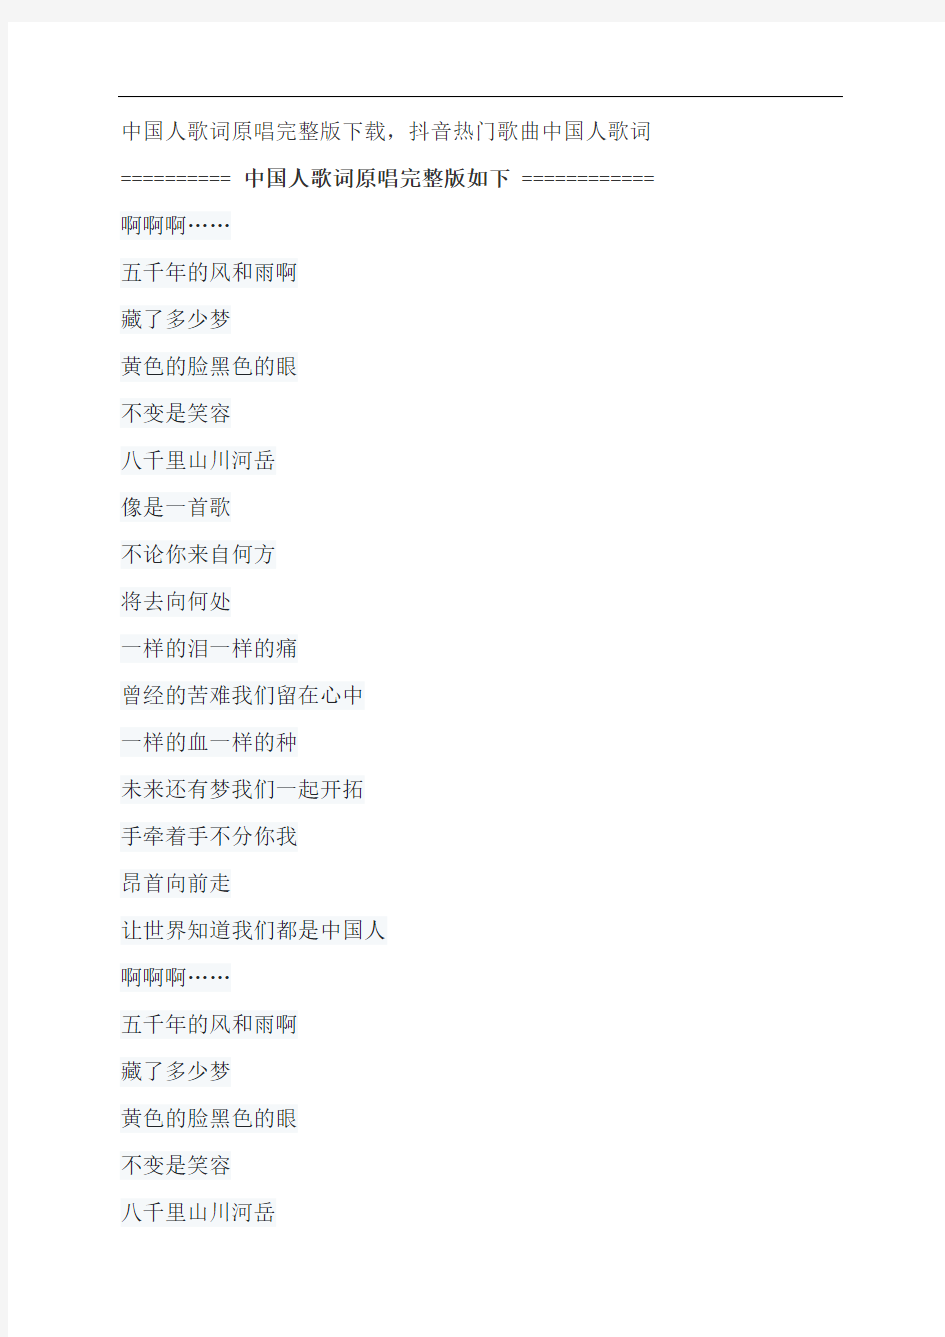 中国人歌词原唱完整版下载,刘德华抖音热门歌曲中国人歌词